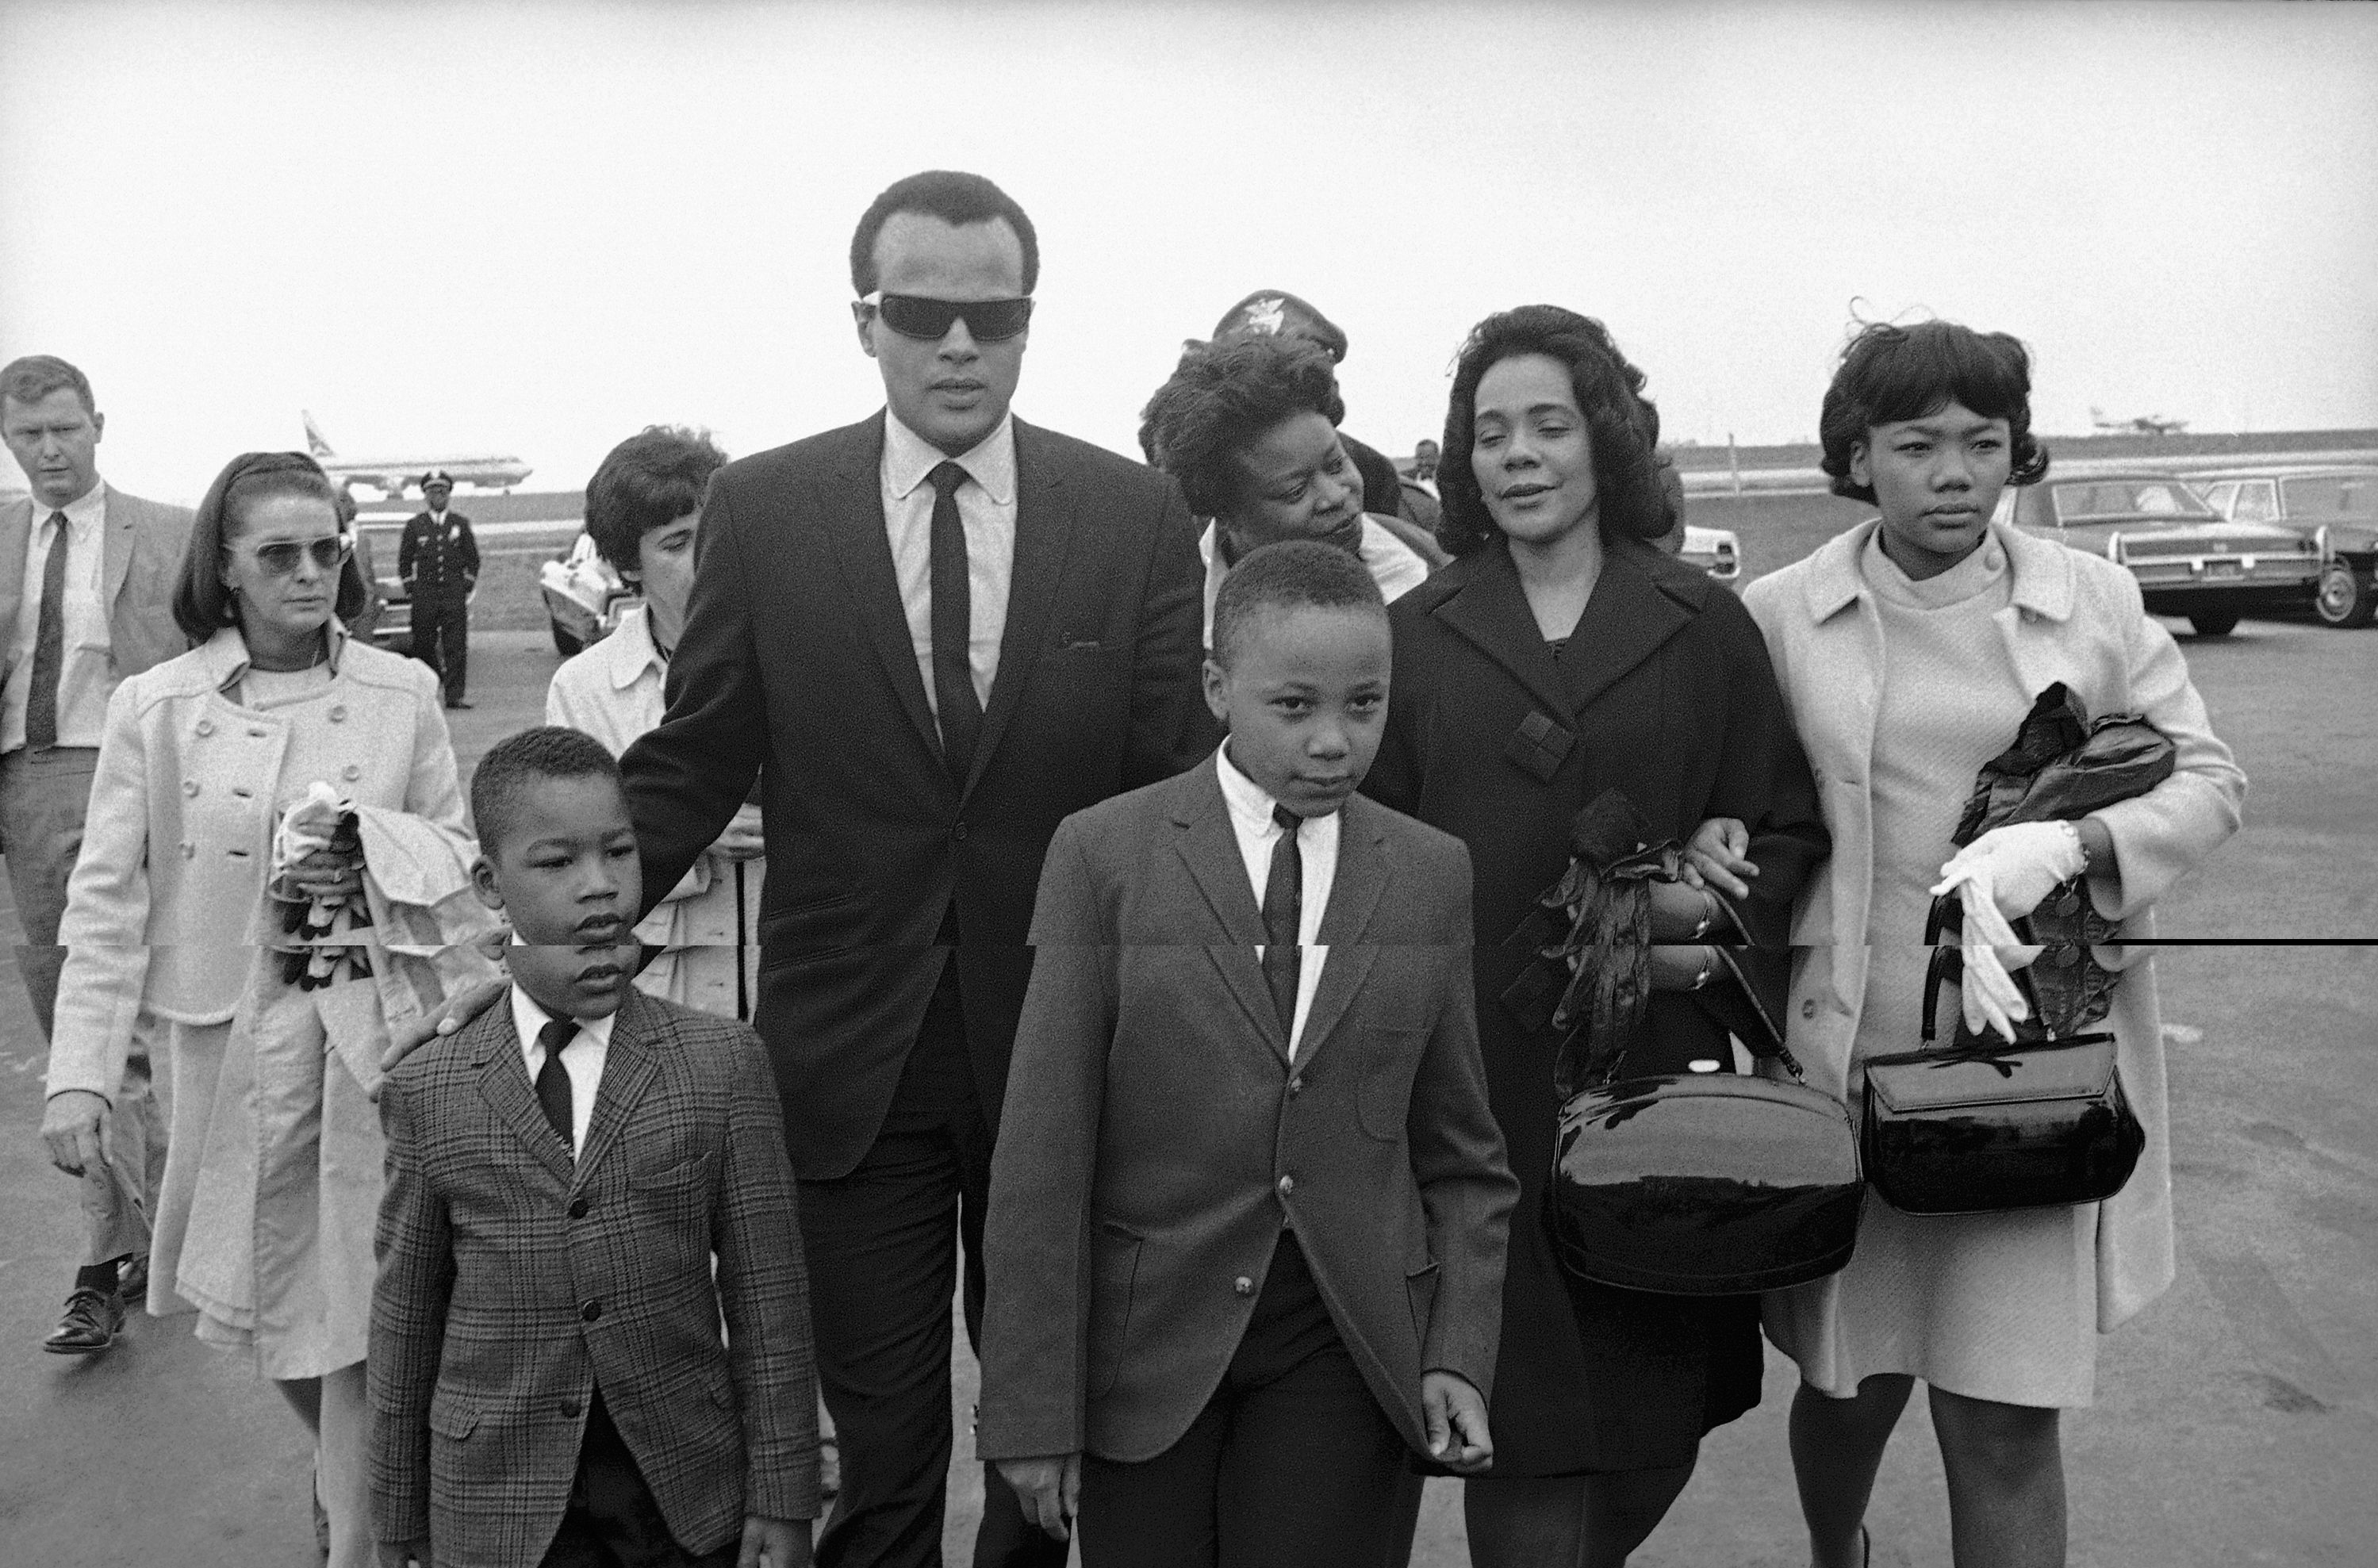 PHOTOS: Martin Luther King Jr.'s Family Life | ATL1968